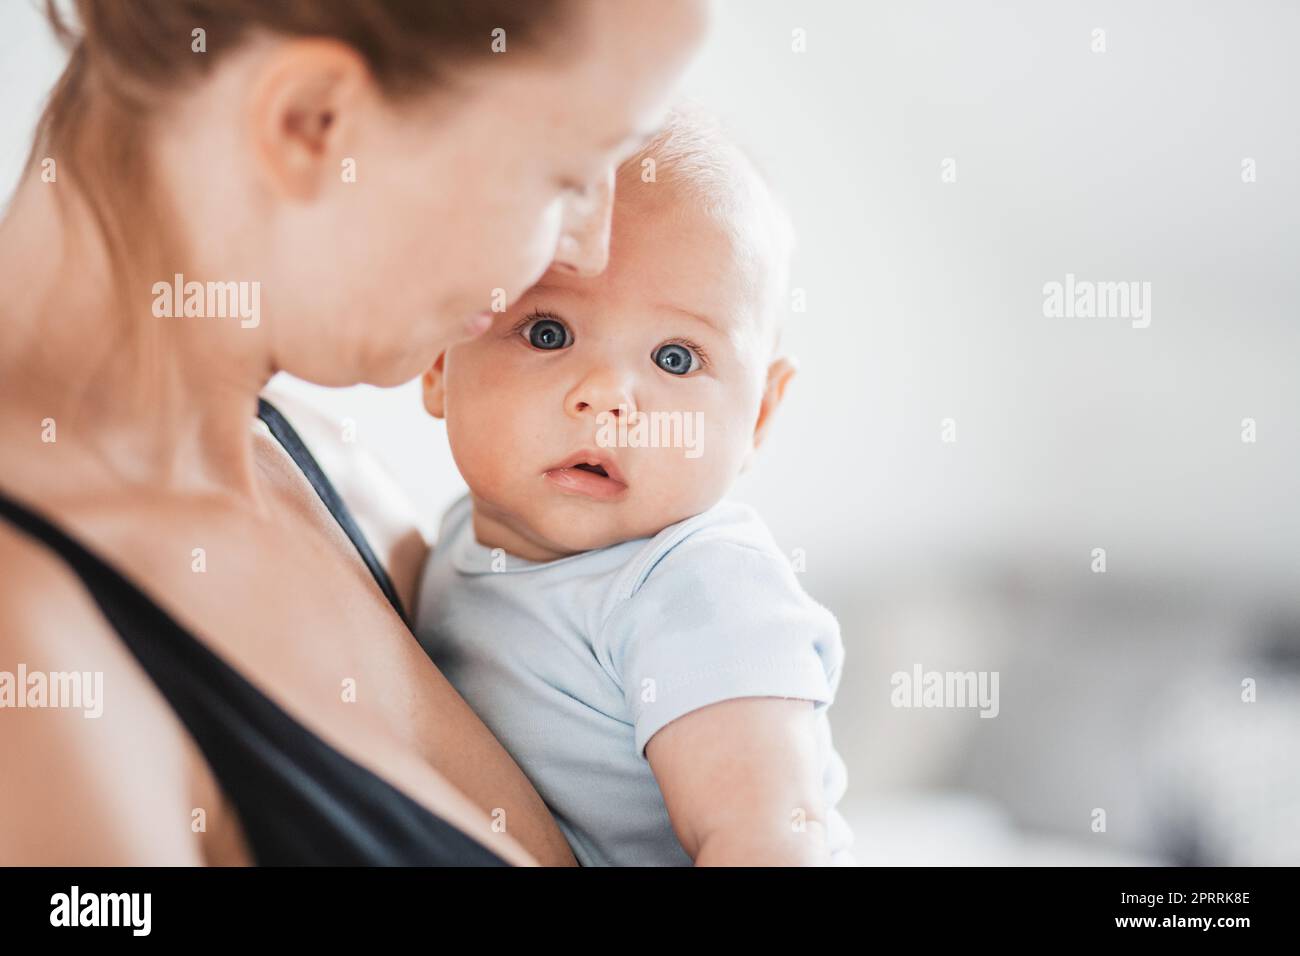 Portrait de bébé doux reposant dans les bras des mères, regardant l'appareil photo. Nouvelle maman tenant et câliner le petit enfant, embrassant l'enfant avec tendresse, amour, soin. Concept de maternité Banque D'Images